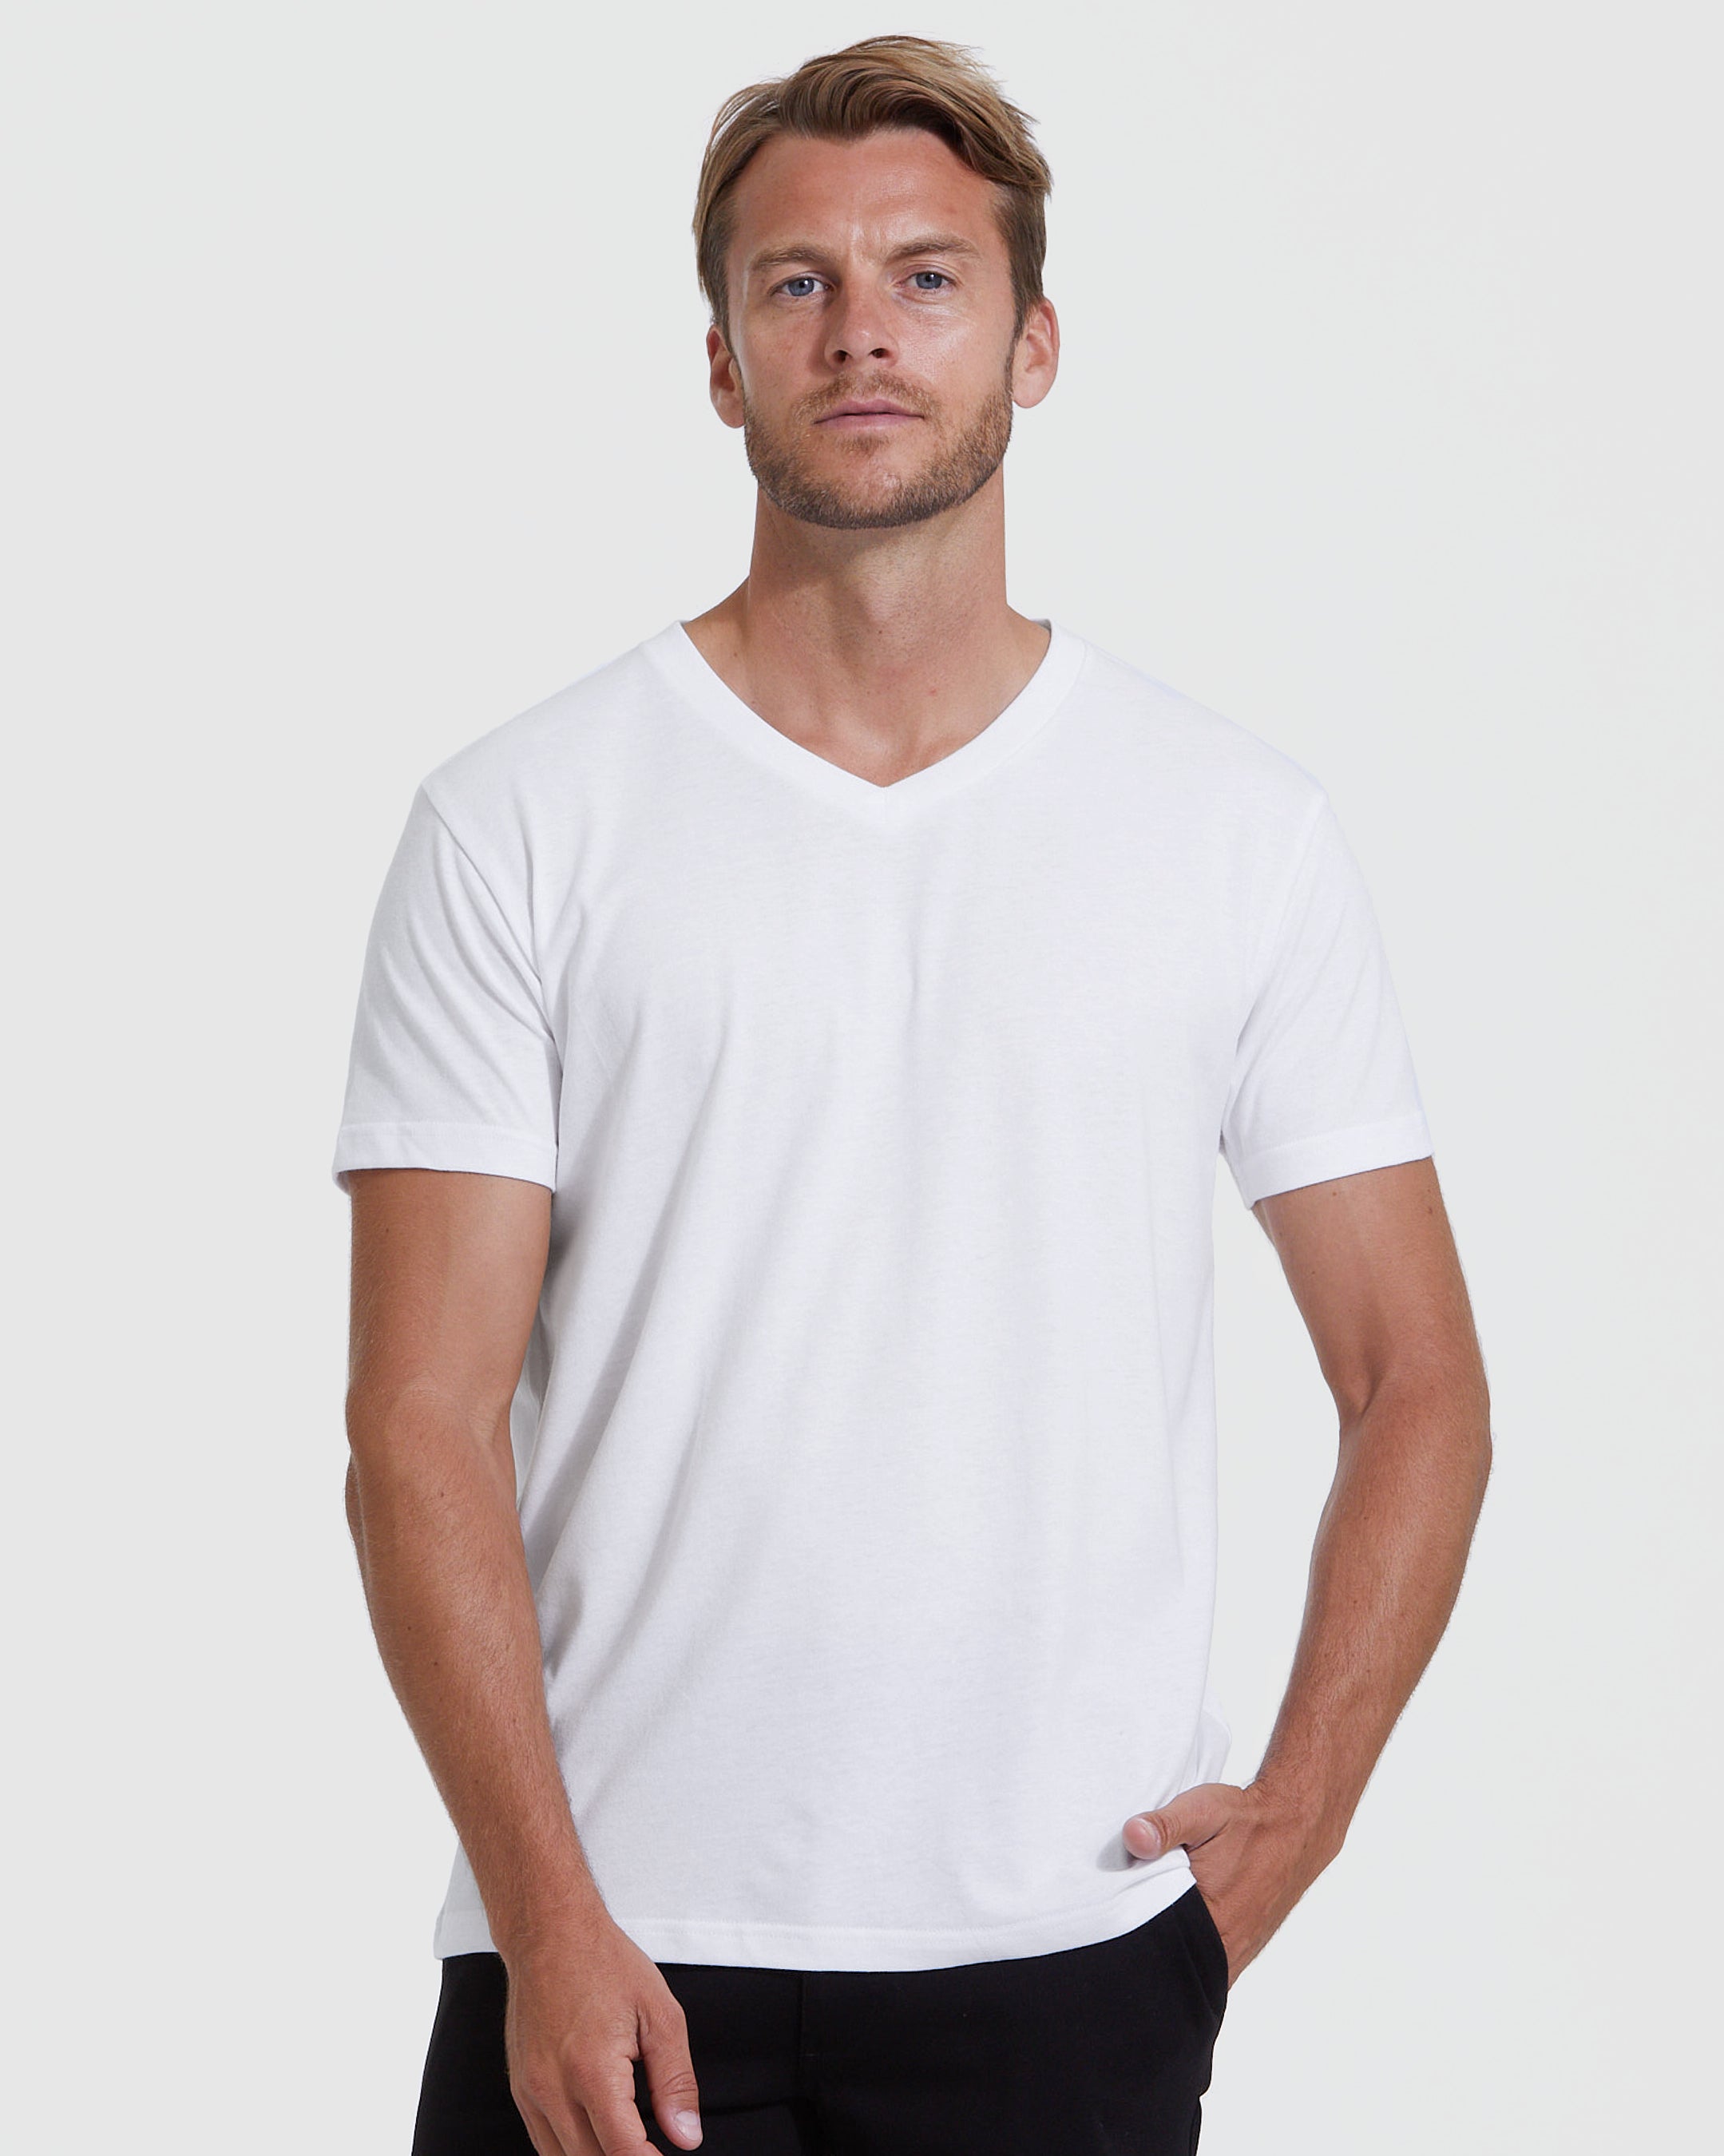 White V-Neck T-Shirt | Men\'s Shirt True V-Neck White Classic 